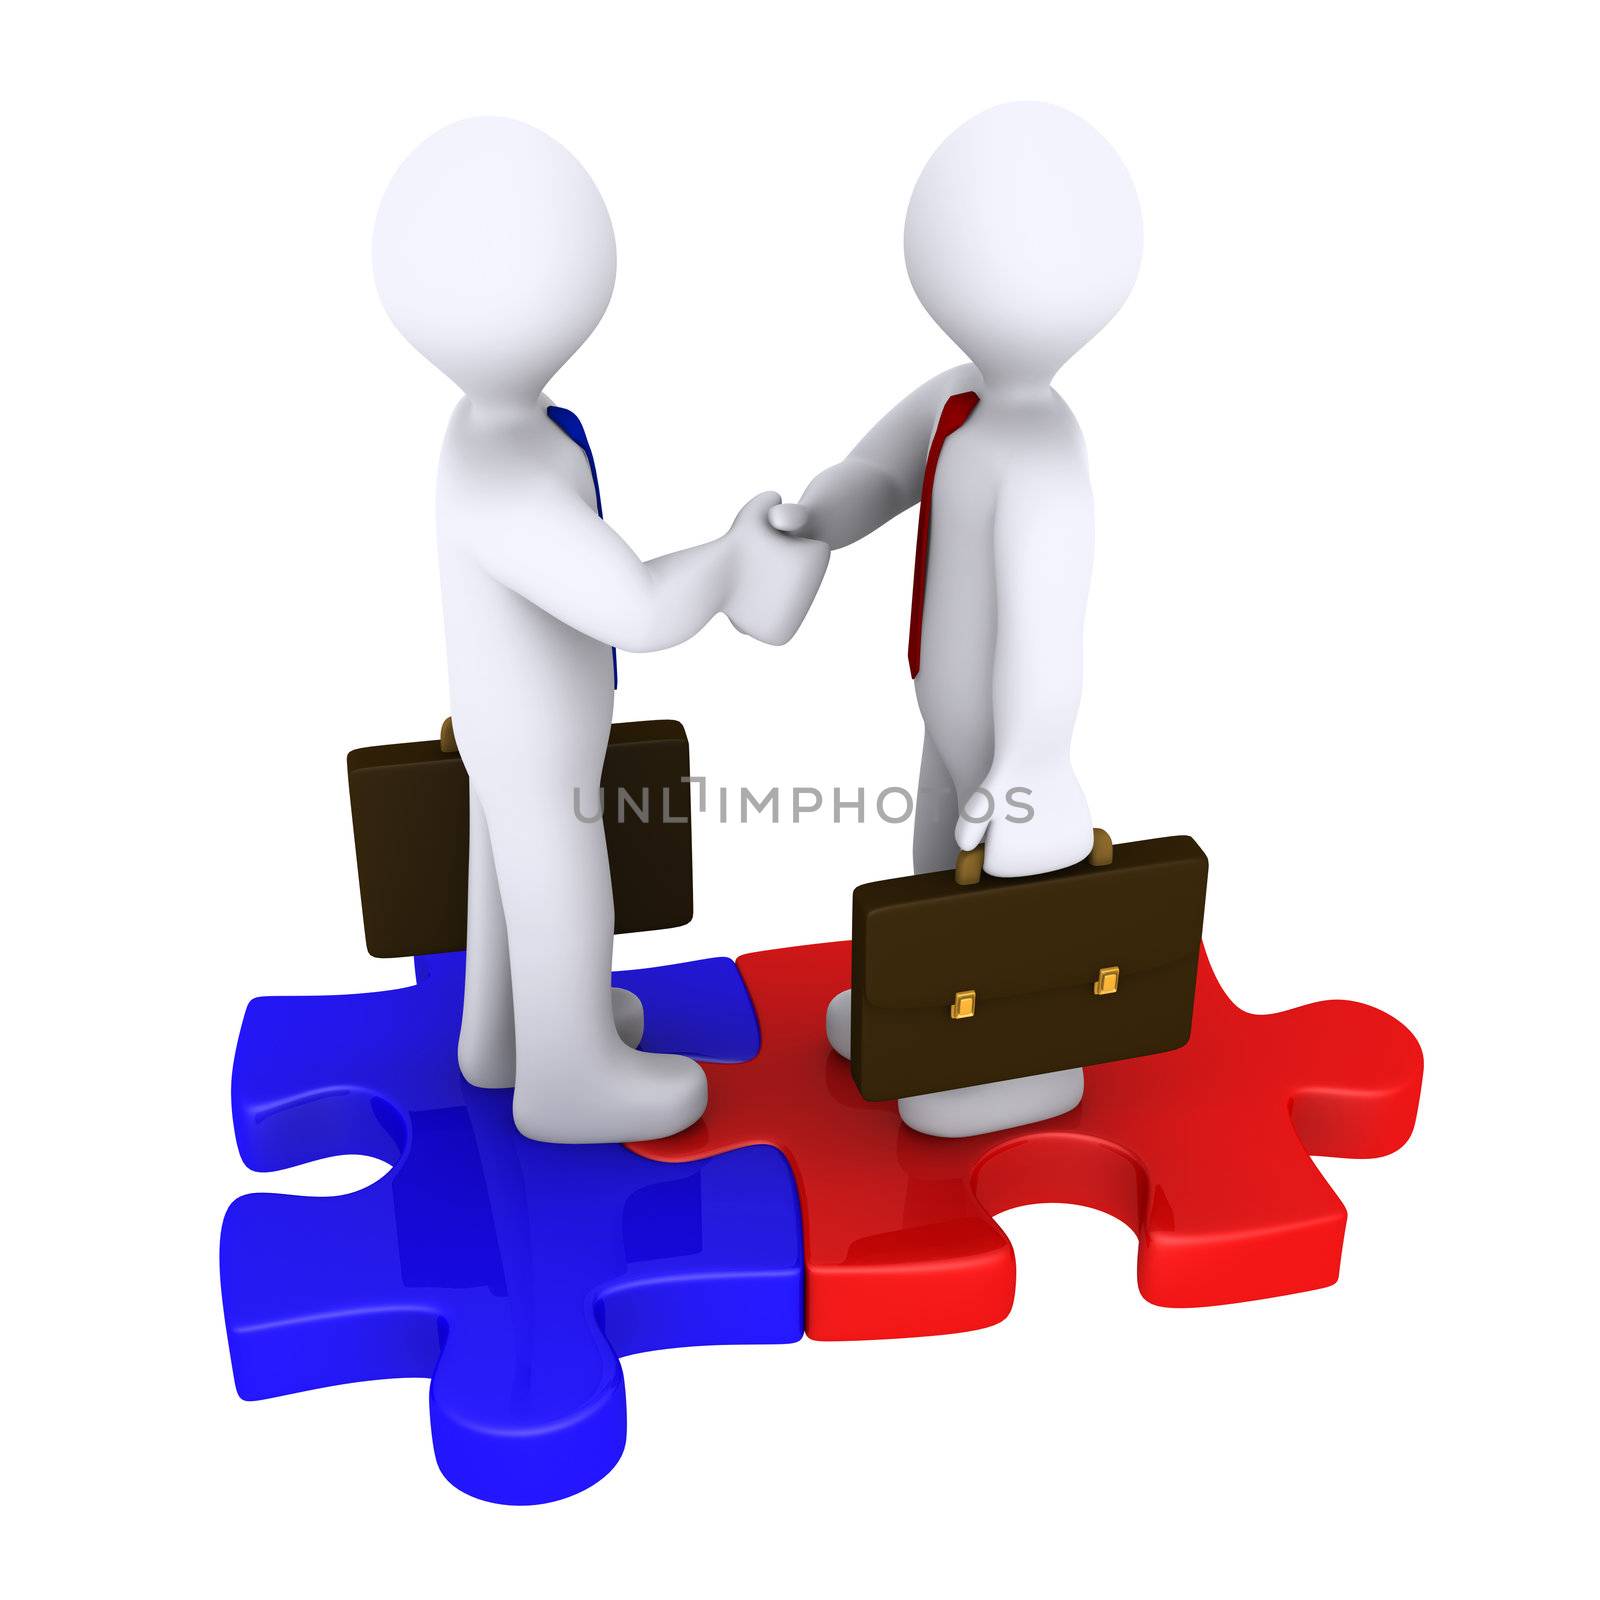 Handshake between two 3d businessmen standing on puzzle pieces